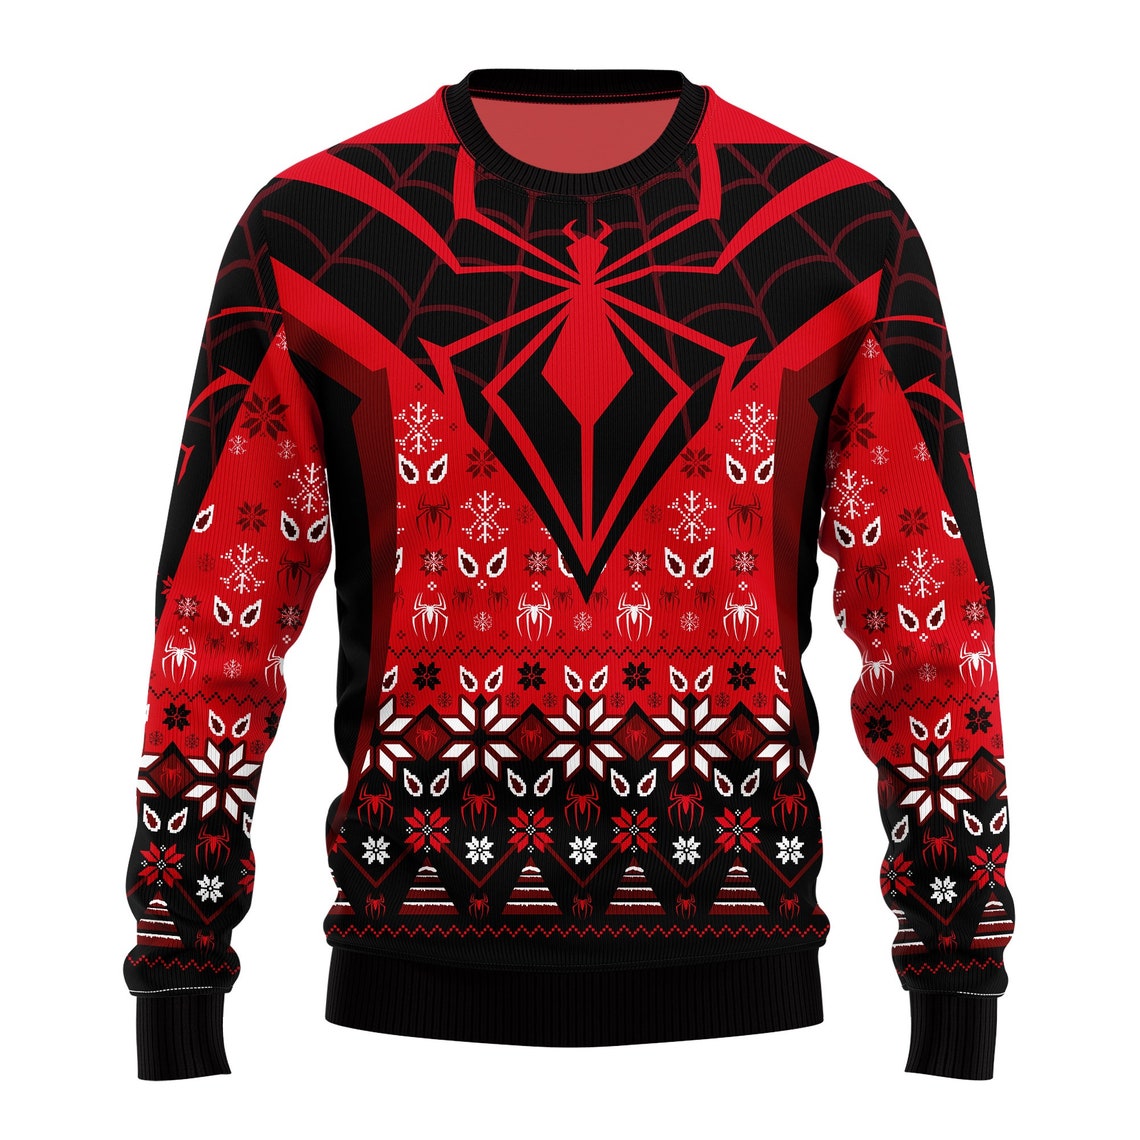 Christmas Spiderman Sweater Superhero Xmas